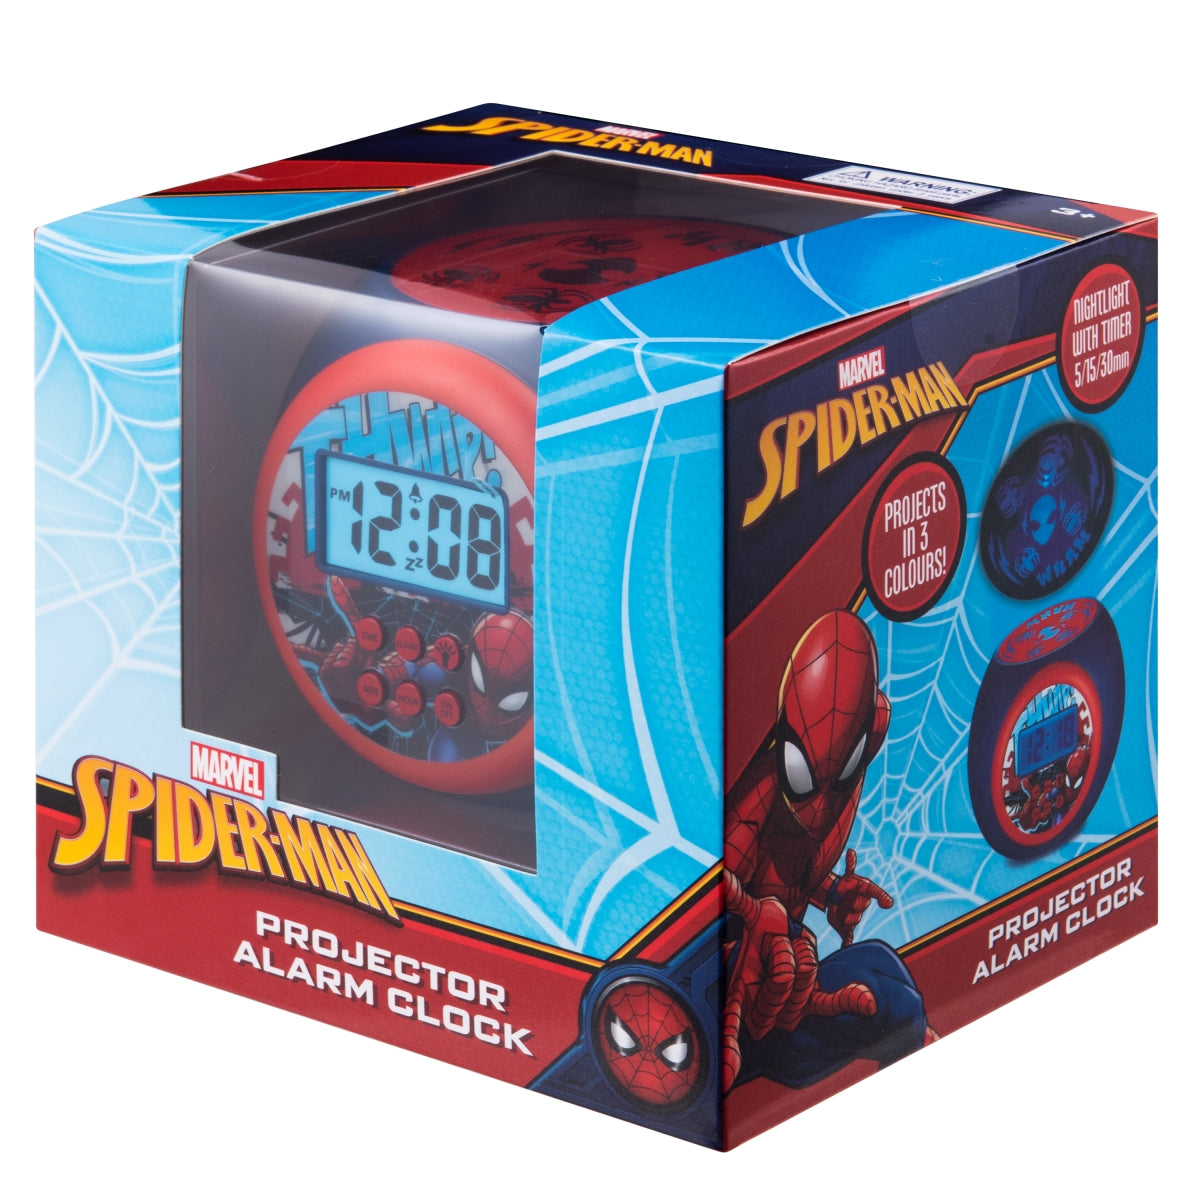 Projector Alarm Clock - Spiderman